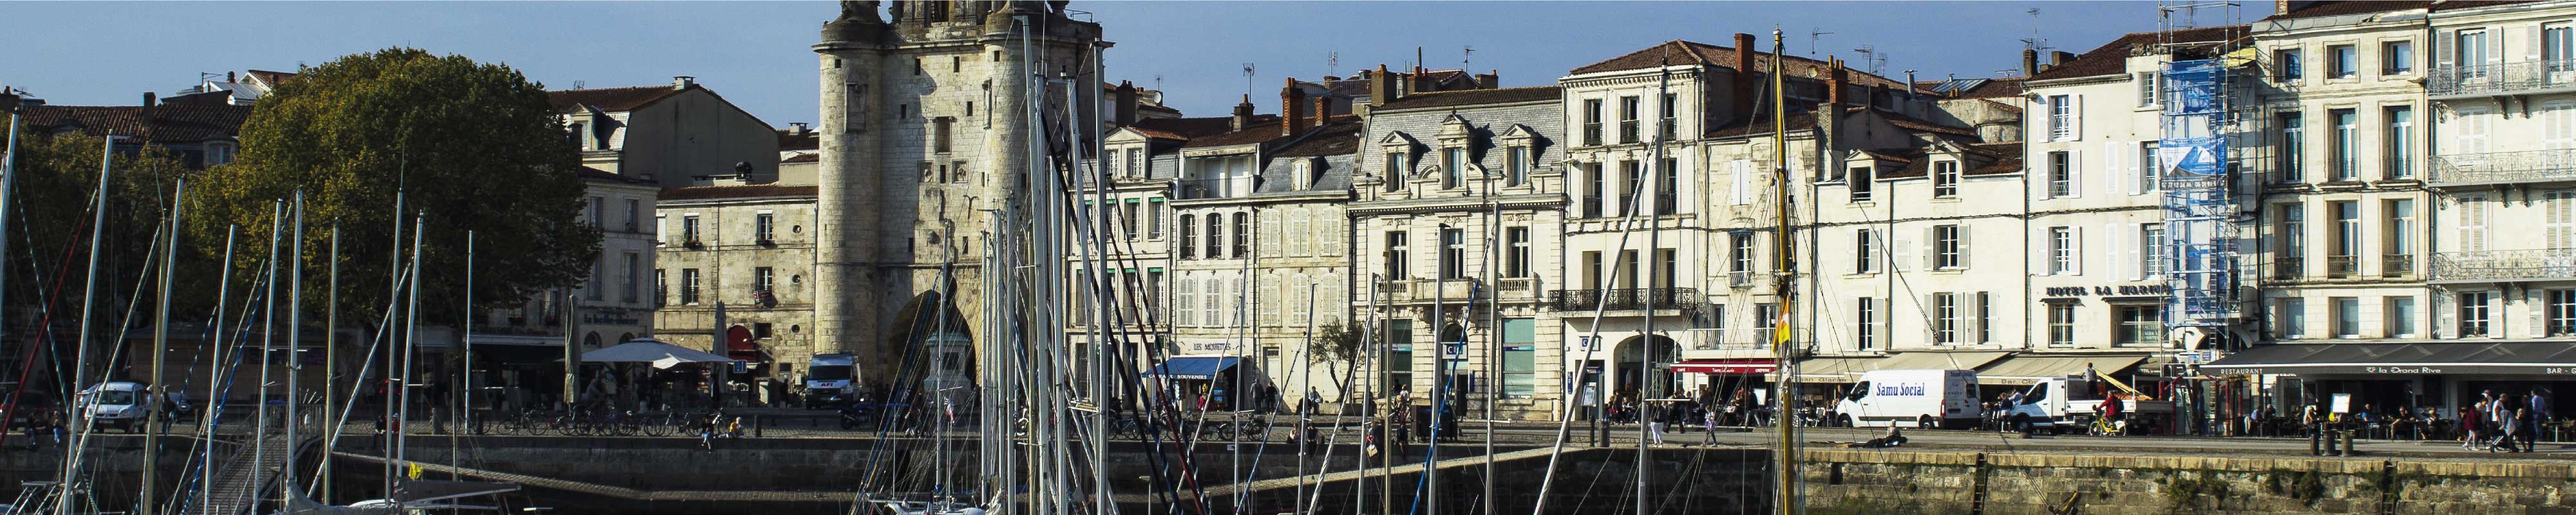 Deposito Bagagli | La Rochelle - Nannybag